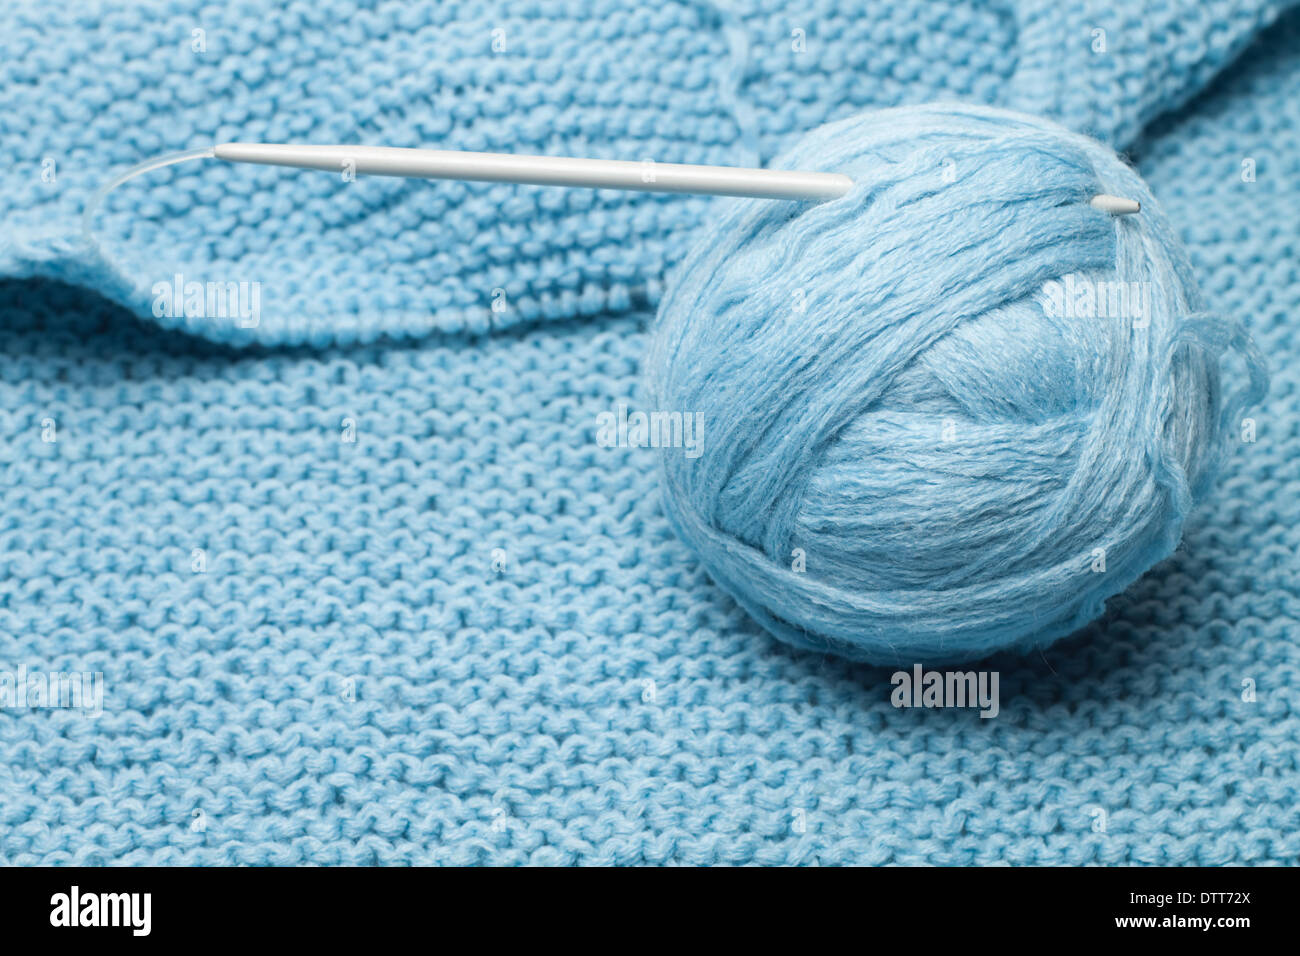 Pelote de laine bleu gris avec aiguille à tricoter Banque D'Images